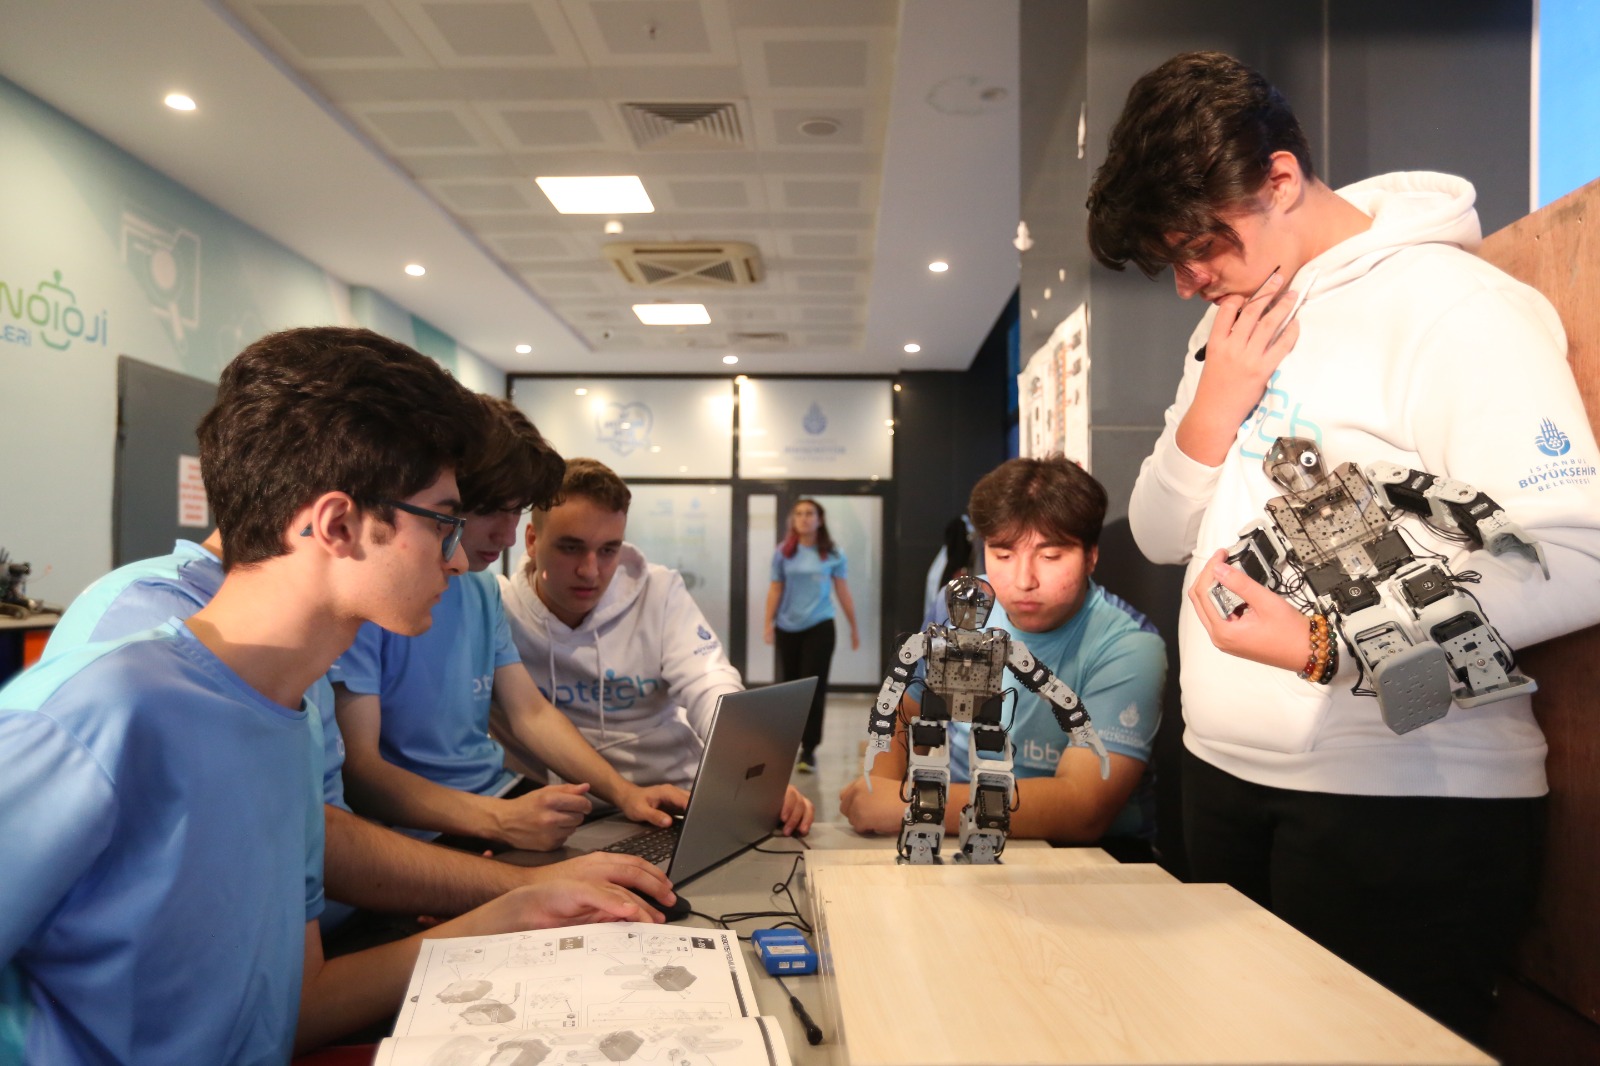 İBBTech Takımları uluslararası robot yarışlarına hazırlanıyor